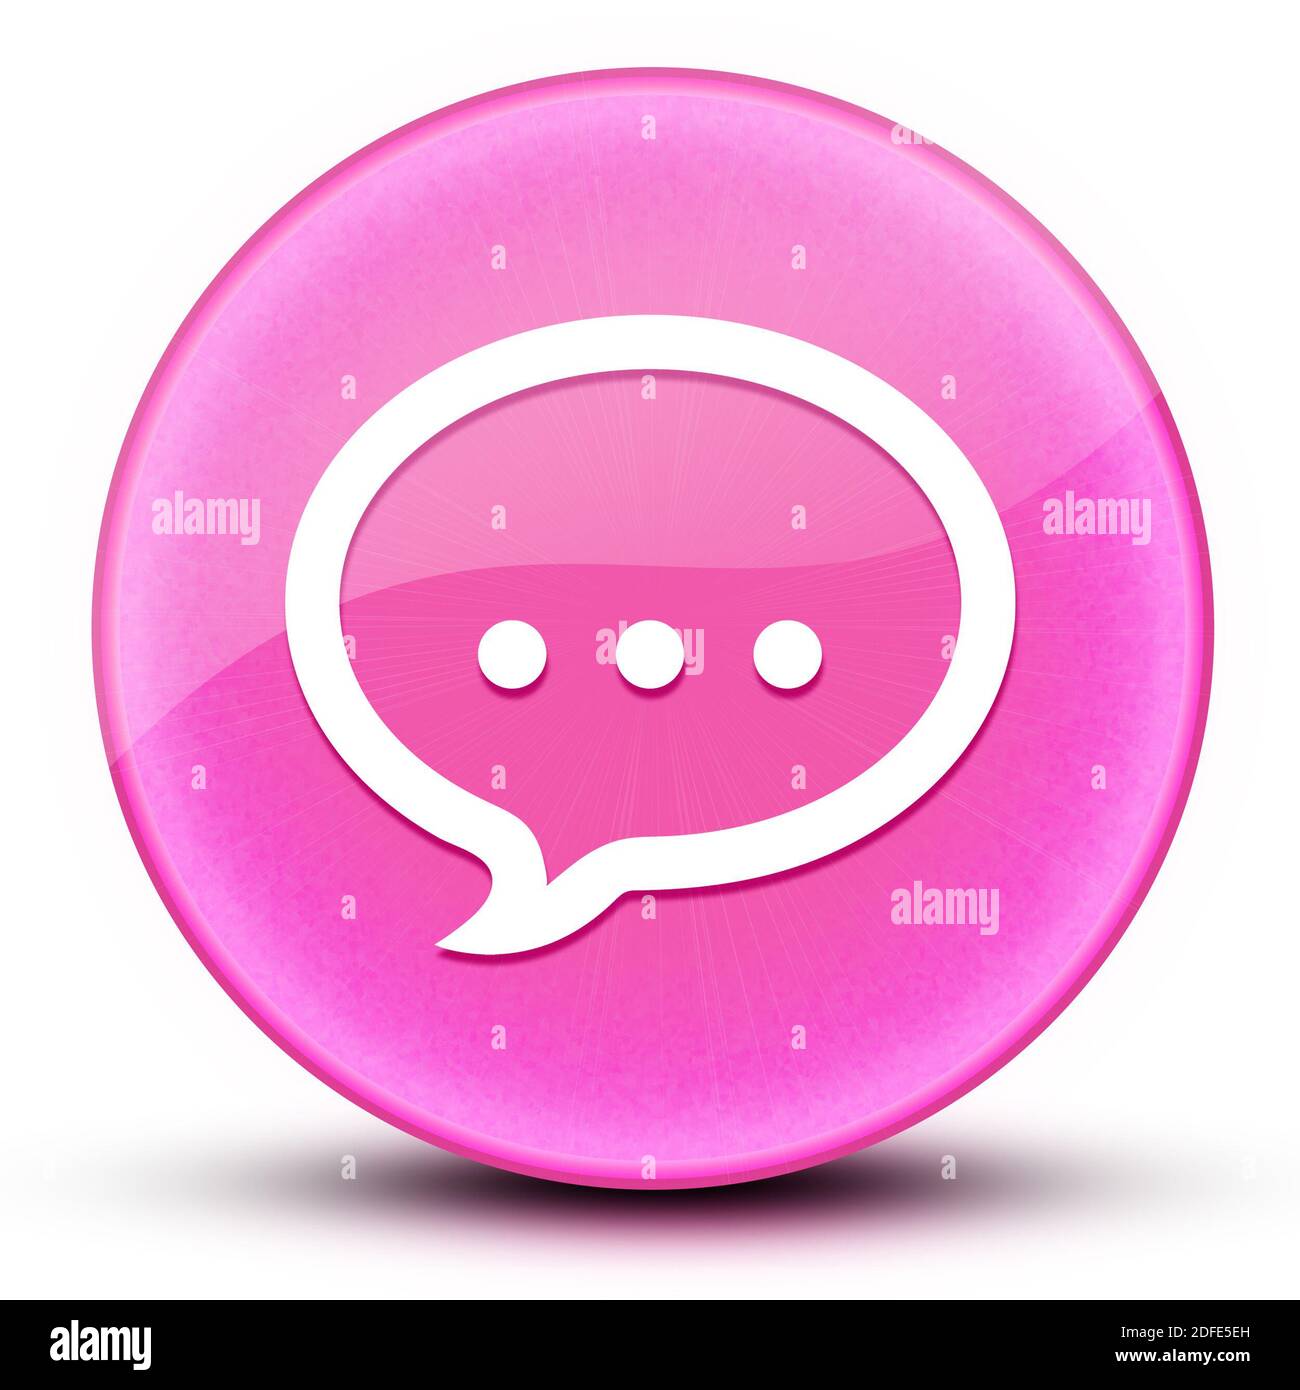 Talk Augapfel glänzend elegant rosa runden Knopf abstrakte Illustration Stockfoto